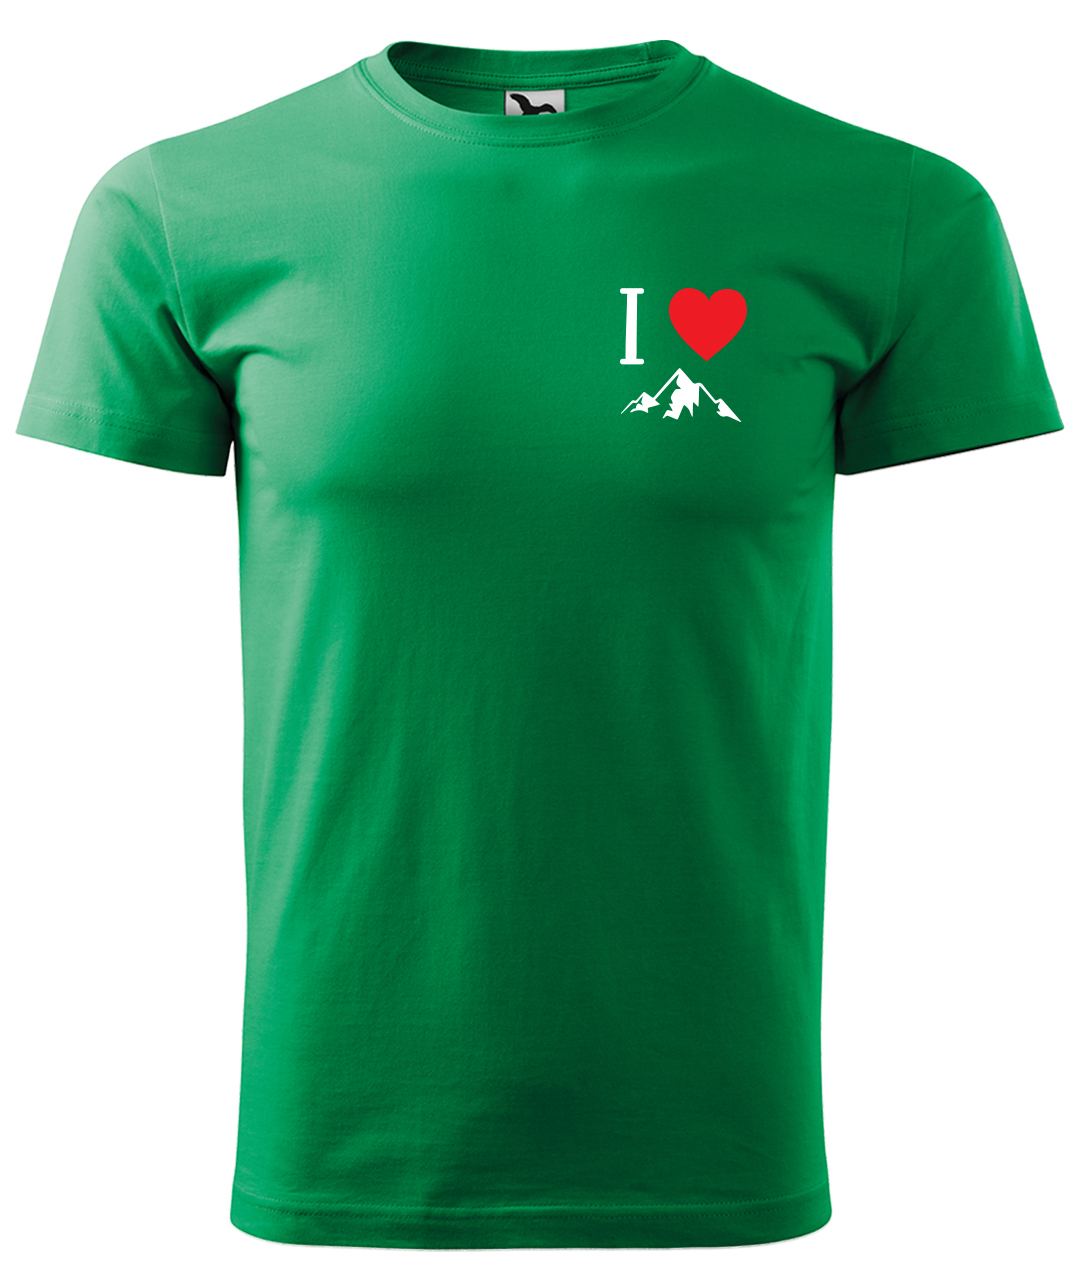 Dětské tričko na hory - I love mountain Velikost: 4 roky / 110 cm, Barva: Středně zelená (16), Délka rukávu: Krátký rukáv